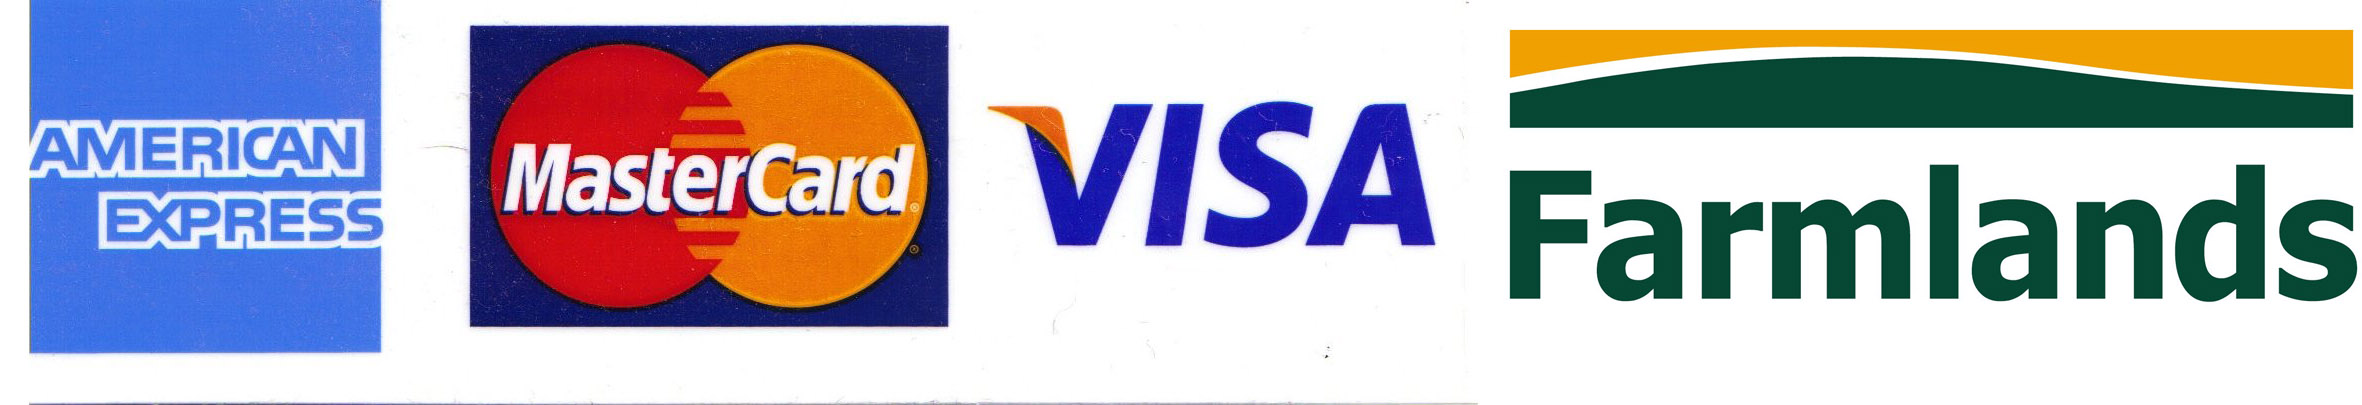 visa_mastercard_americanexpress